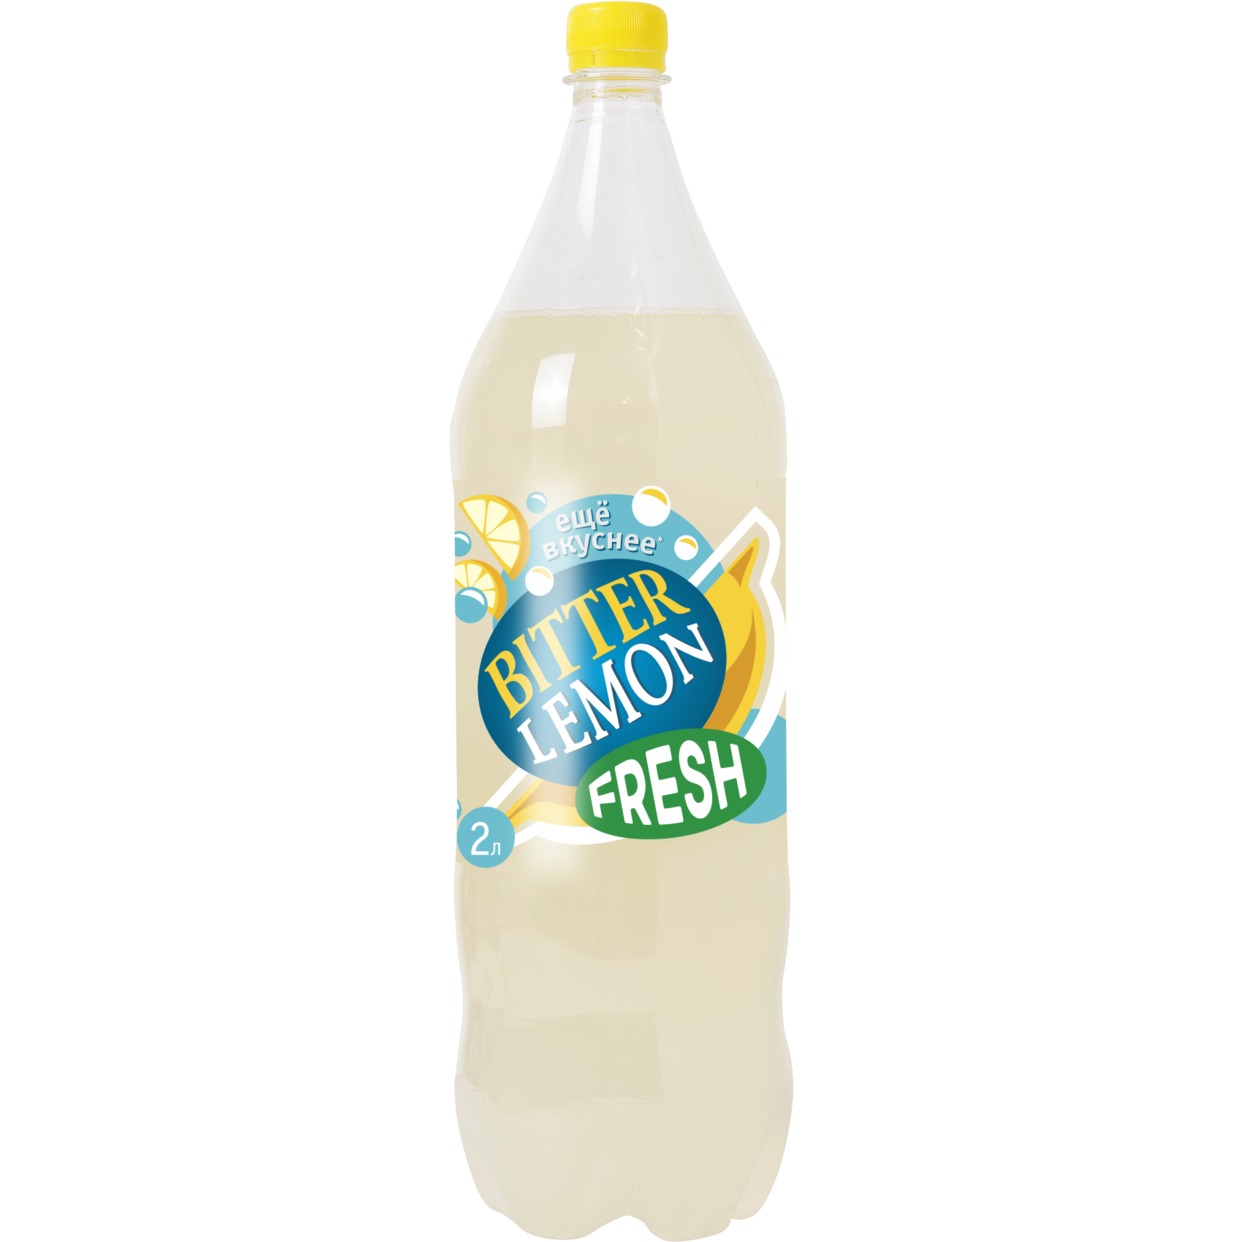 Напиток Fresh Bitter Lemon, сильногазированный, 2 л по акции в Пятерочке